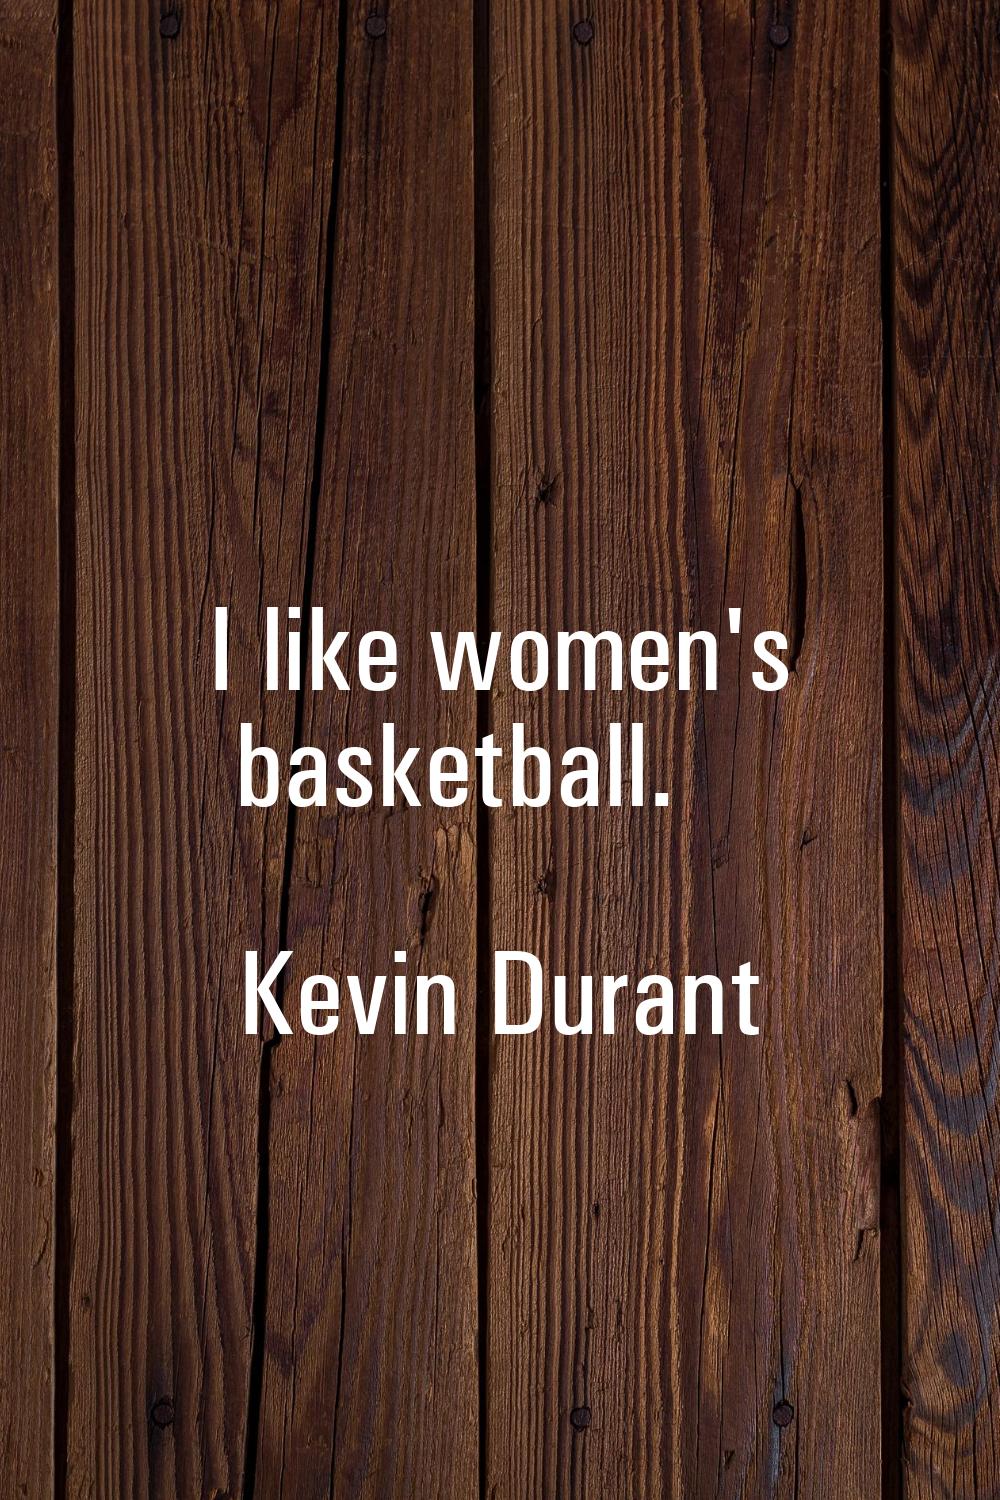 I like women's basketball.